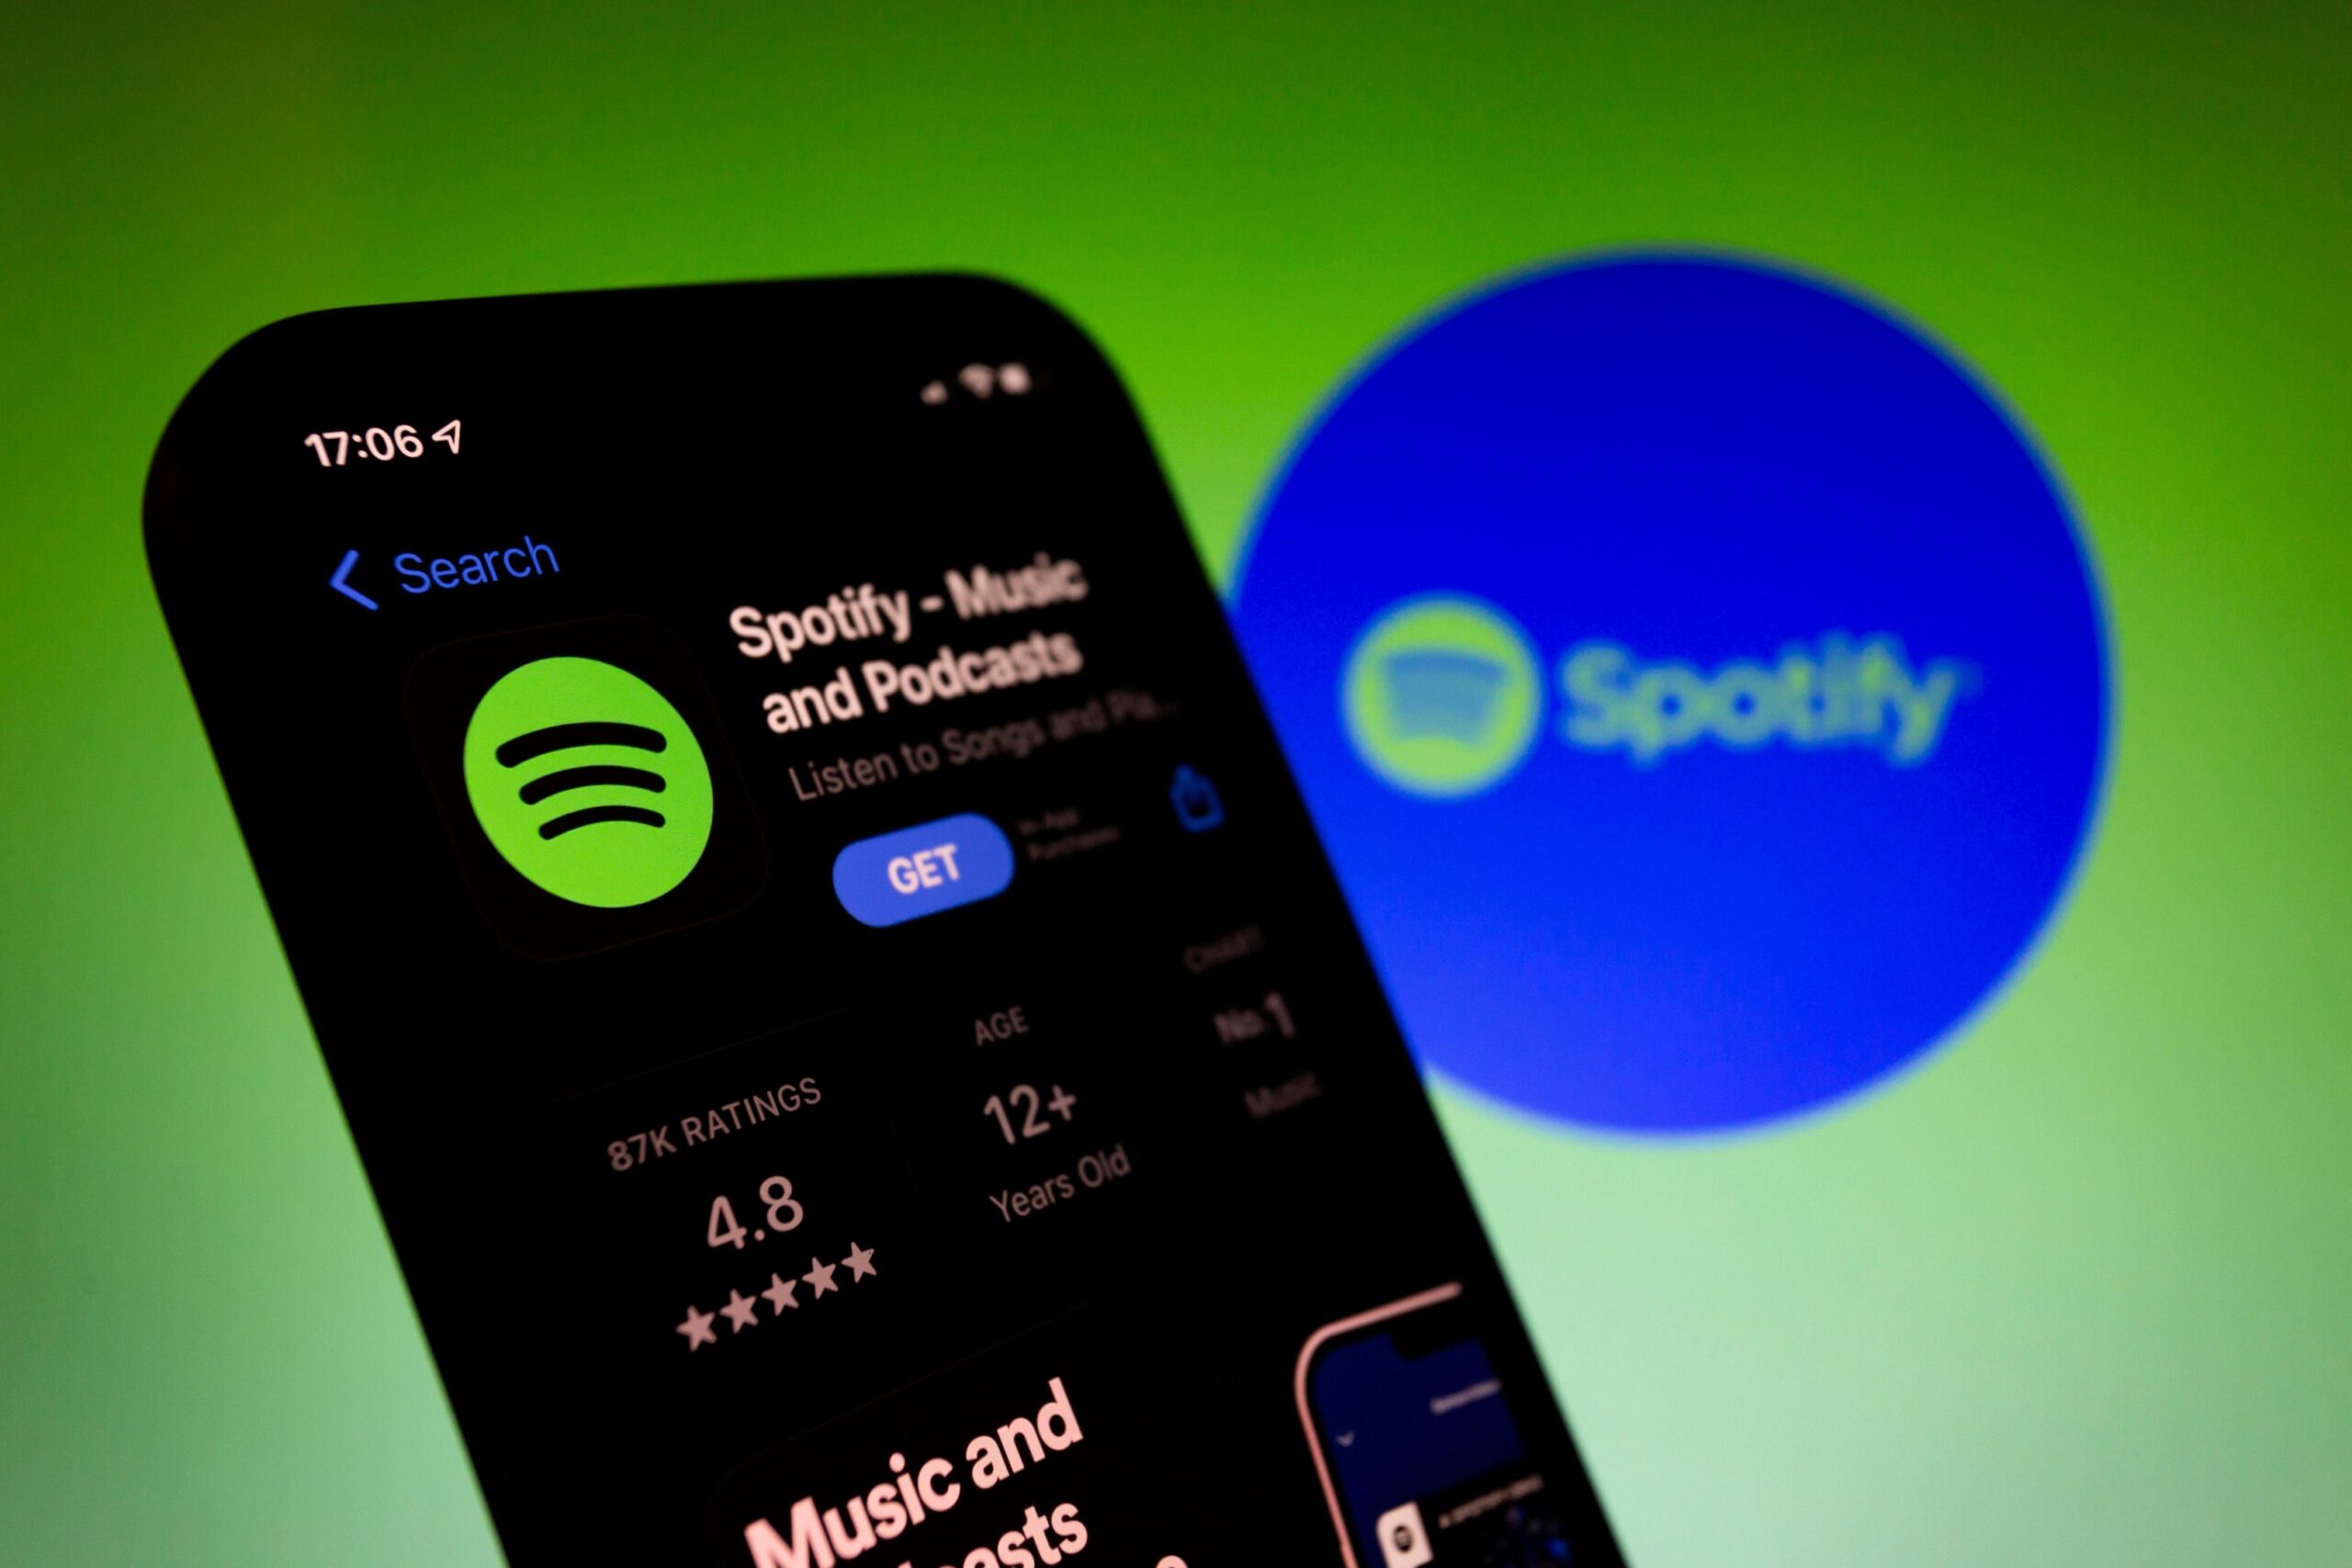 La oferta de Spotify solo está disponible hasta el 11 de septiembre